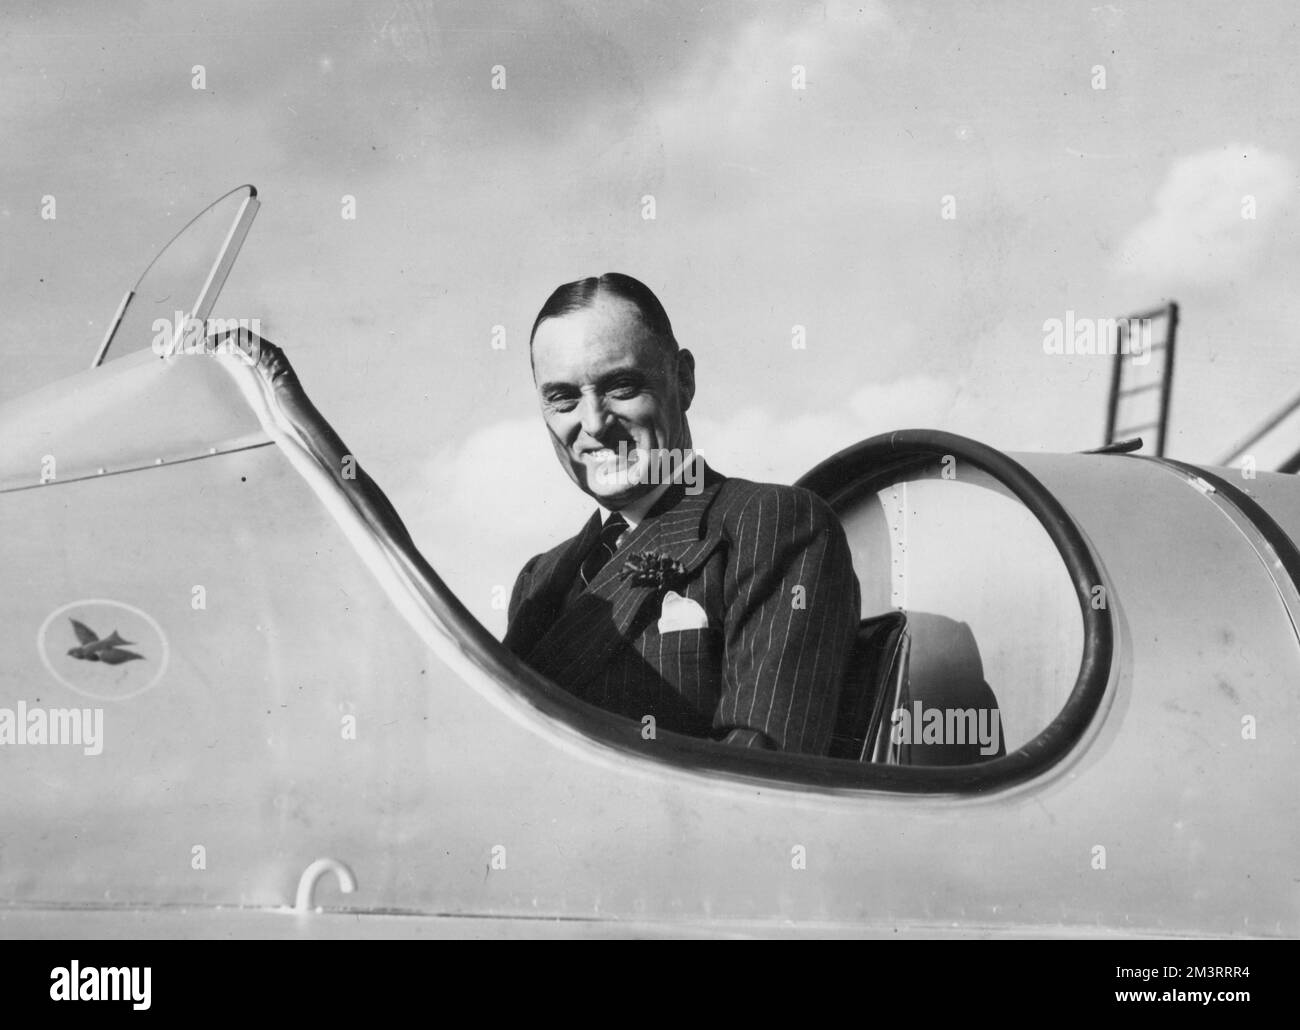 Sir Malcolm Campbell (1885-1948), britischer Autorennen- und Autorenjournalist, mit dem Campbell-Napier-Railton Blue Bird (Blue Bird II), mit dem er am 5. Februar 1931 den Geschwindigkeitsrekord in Daytona Beach mit einer Geschwindigkeit von 245,736 km/h brach. Datum: 1931 Stockfoto